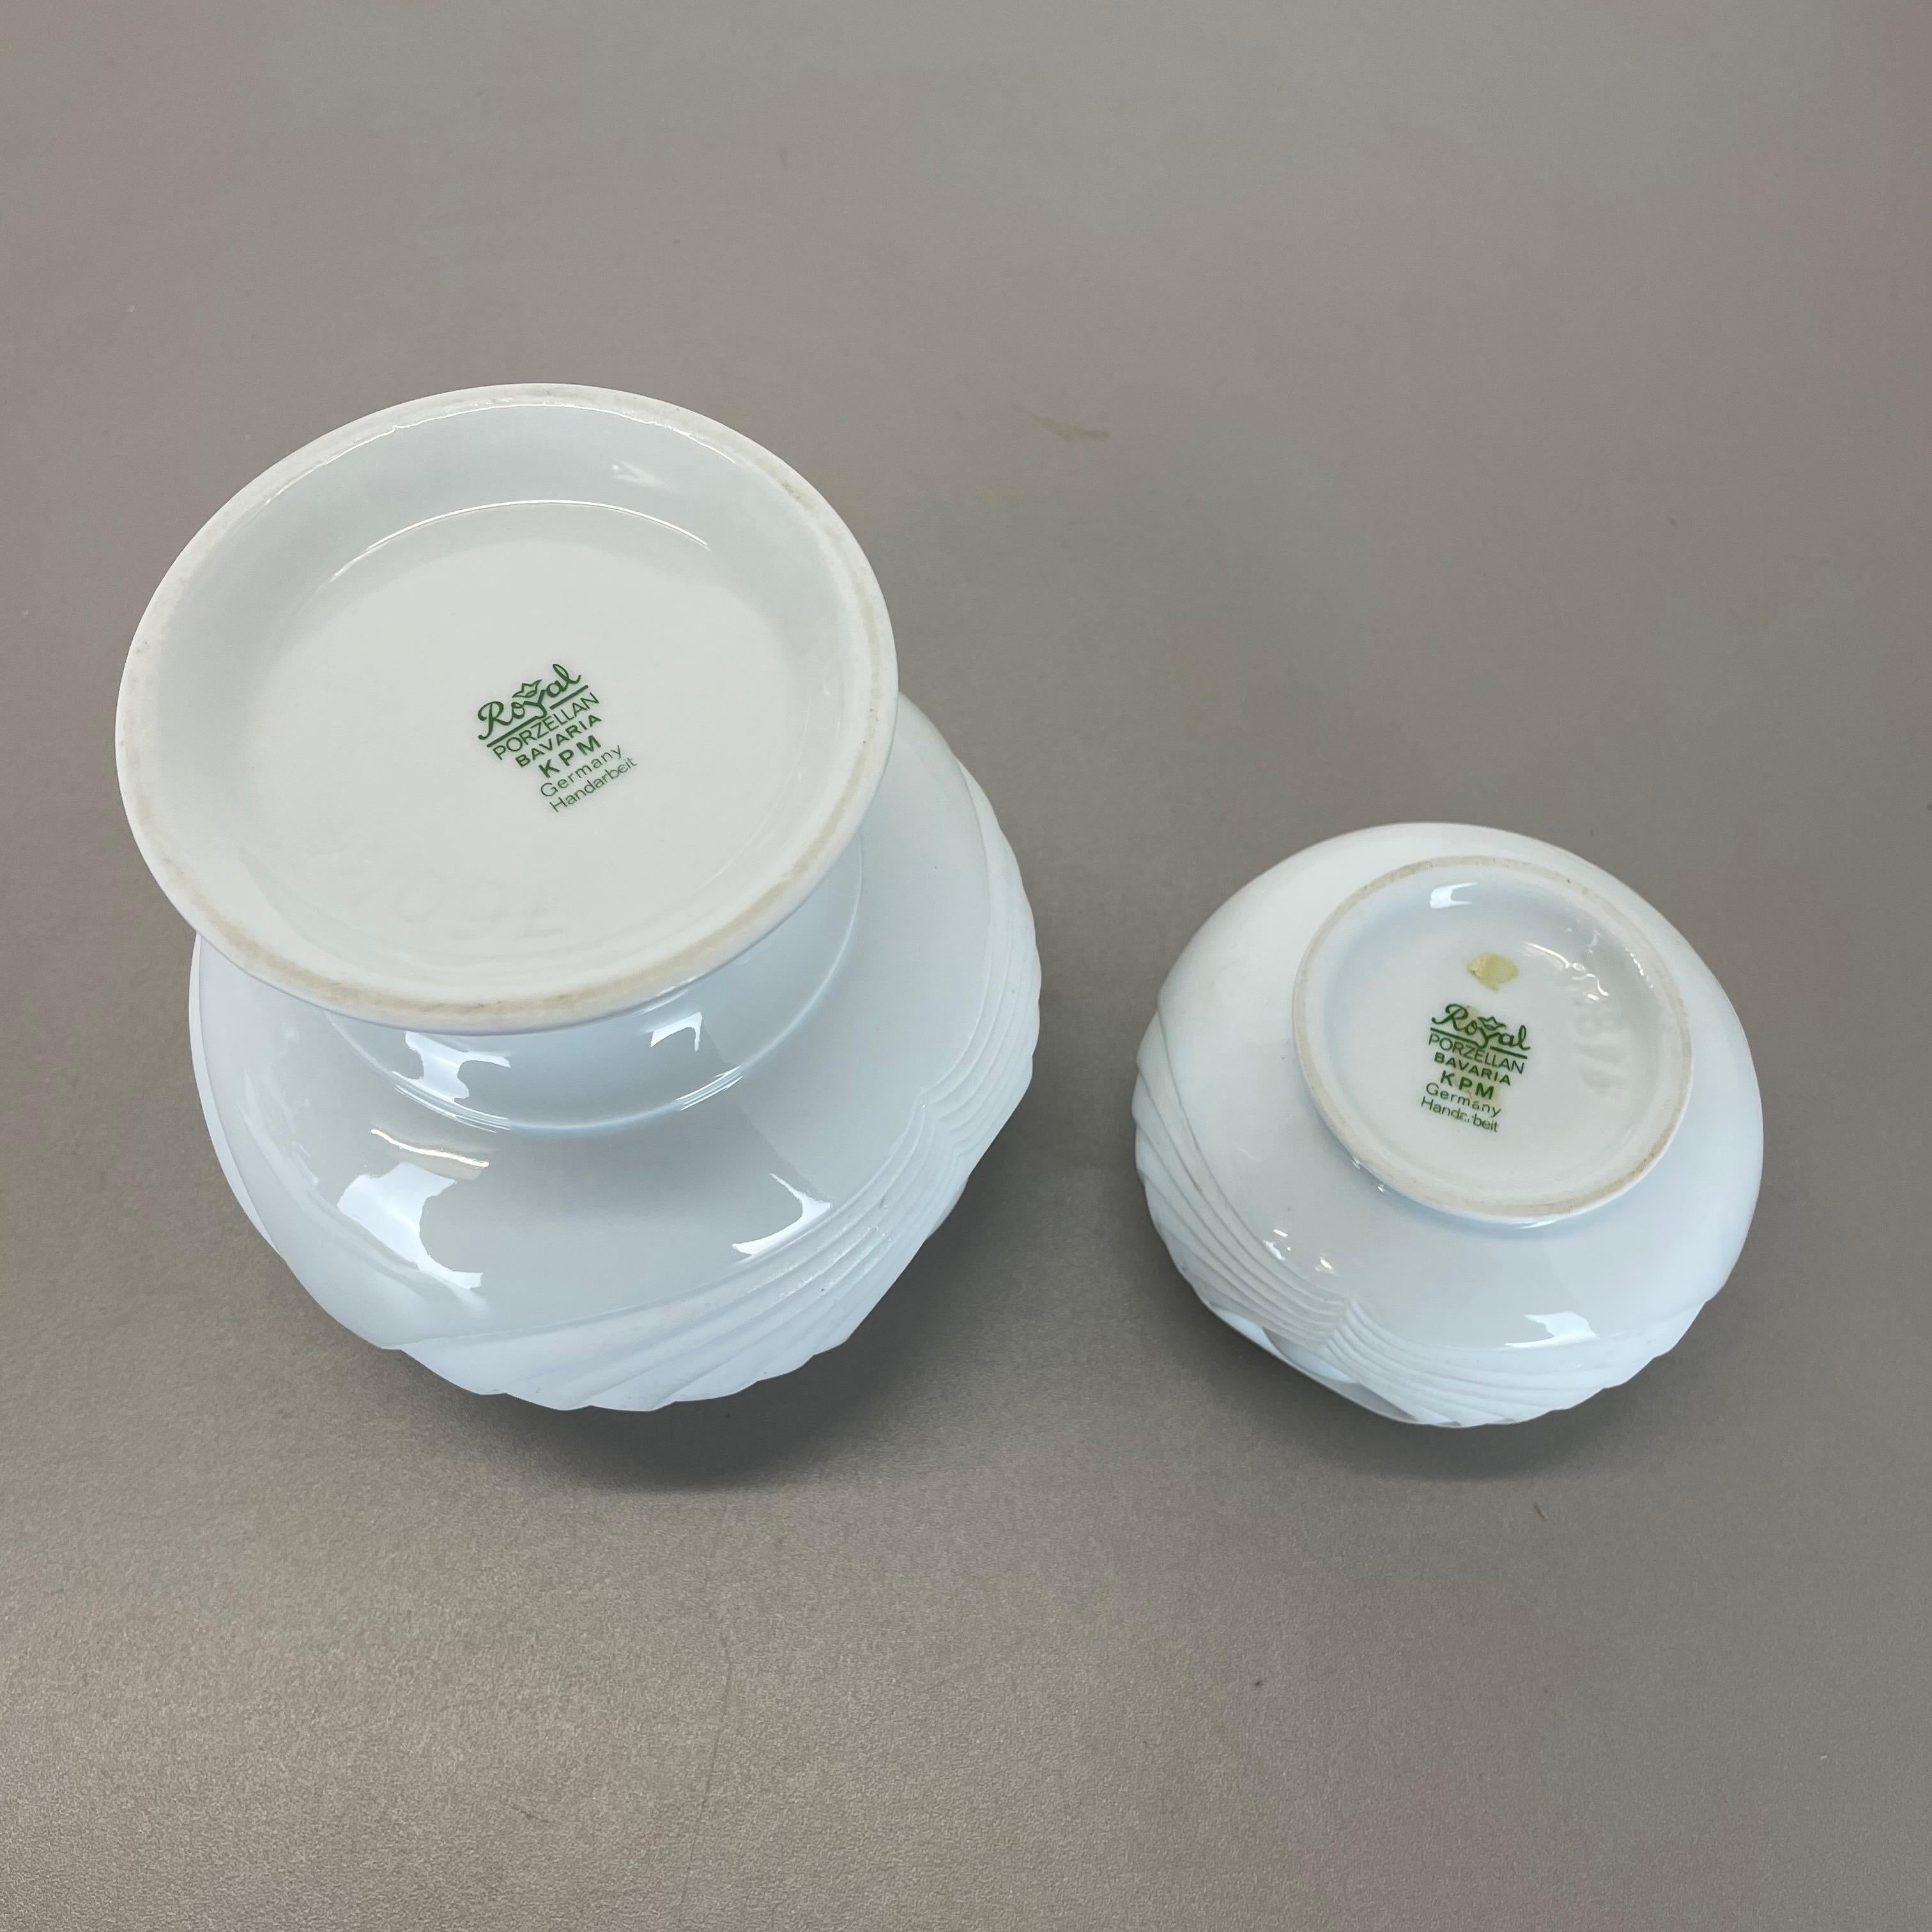 Set of 2 Original Porcelain OP Art Vase Made by Royal Bavaria KPM Germany, 1970s For Sale 8